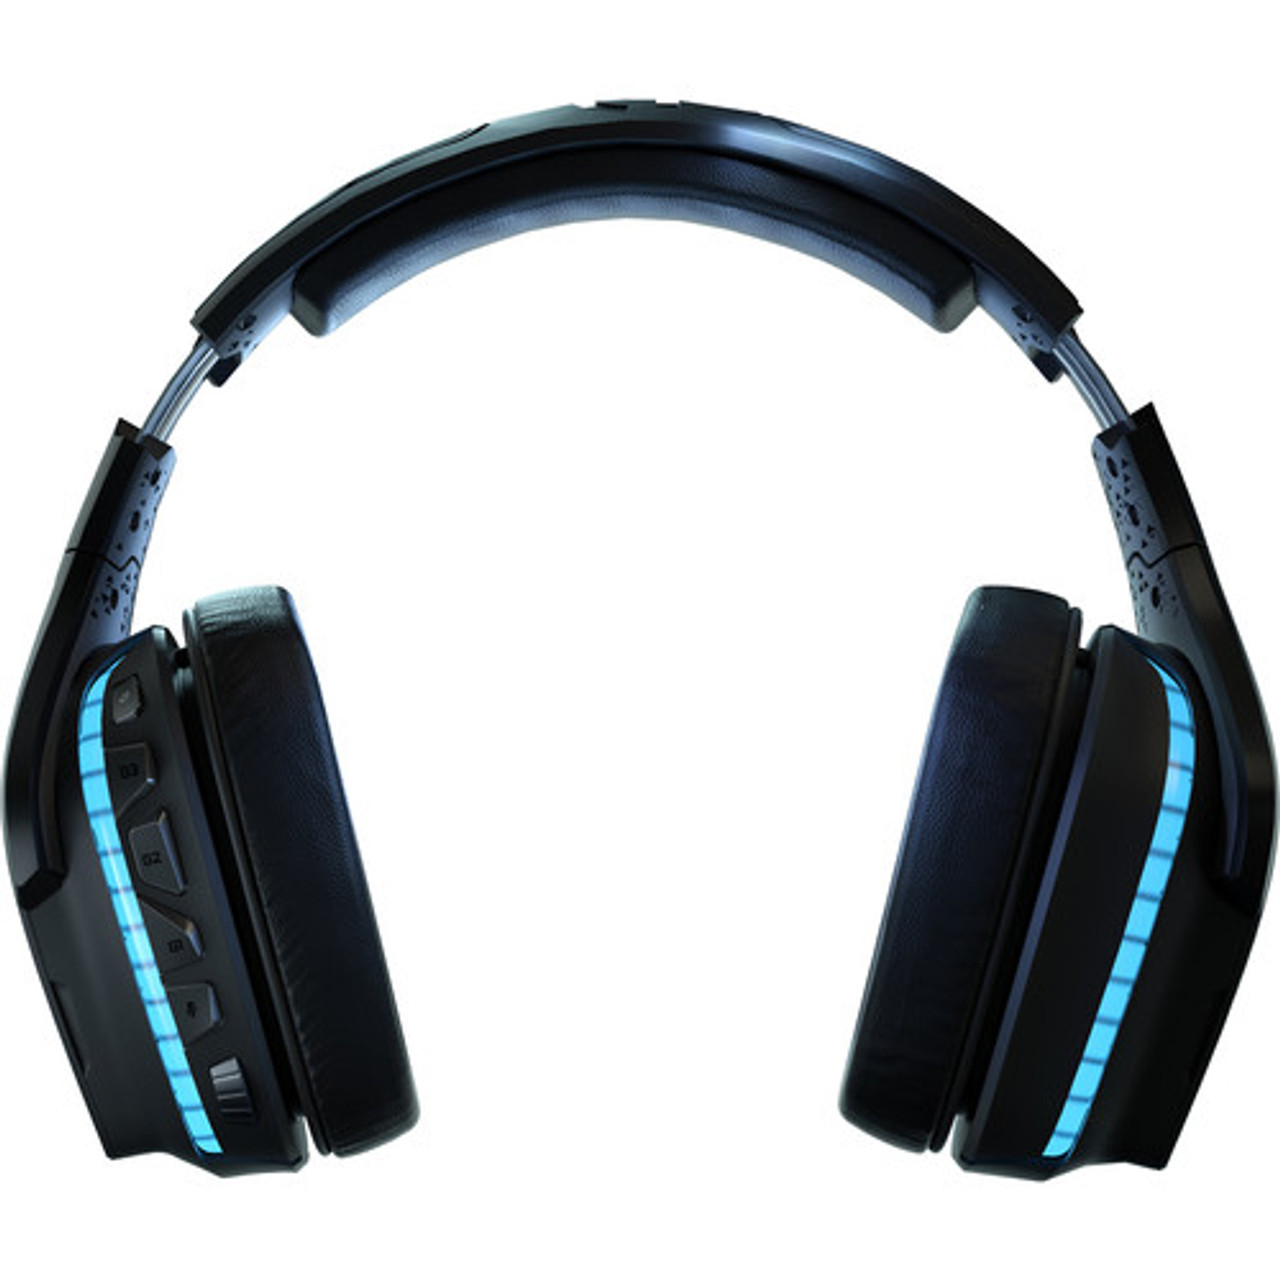 Auriculares inalambricos con microfono logitech g935 gaming lightsync 7.1  981-000742 black